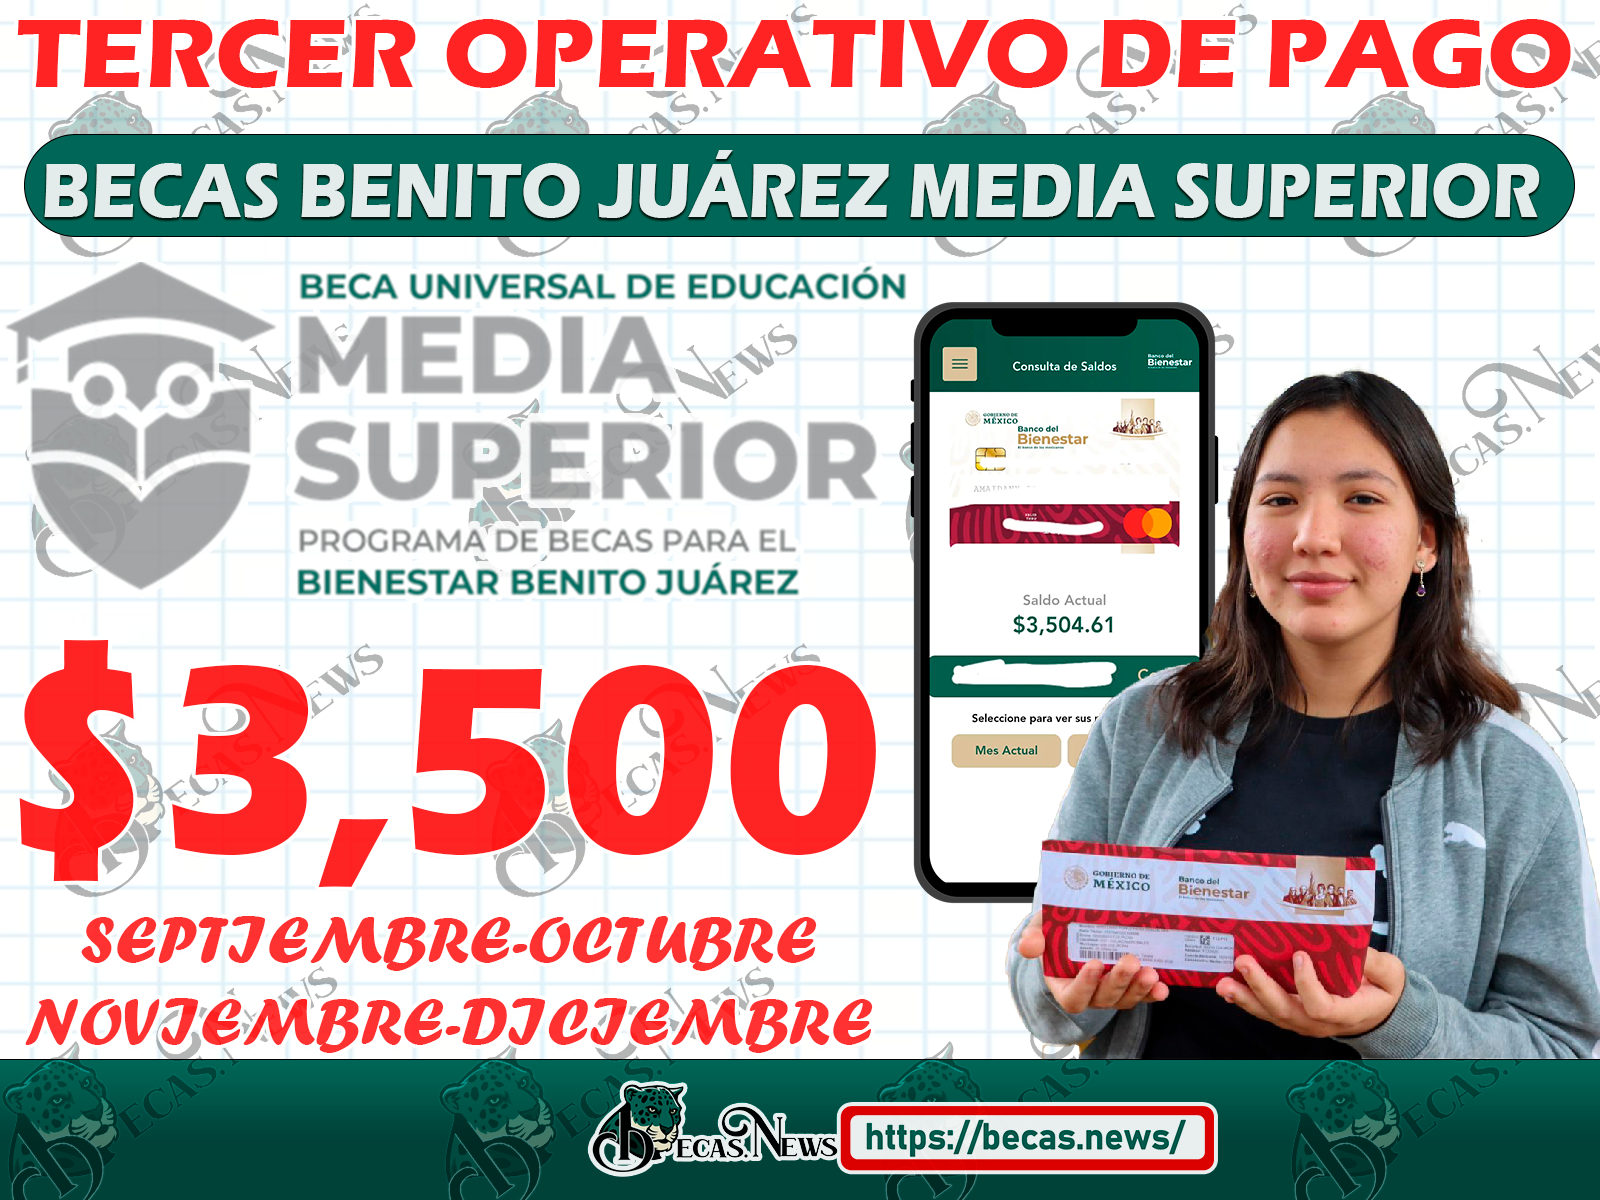 Recibes la Beca Benito Juárez Nivel Media Superior ¡En esta fecha recibes tu pago doble!